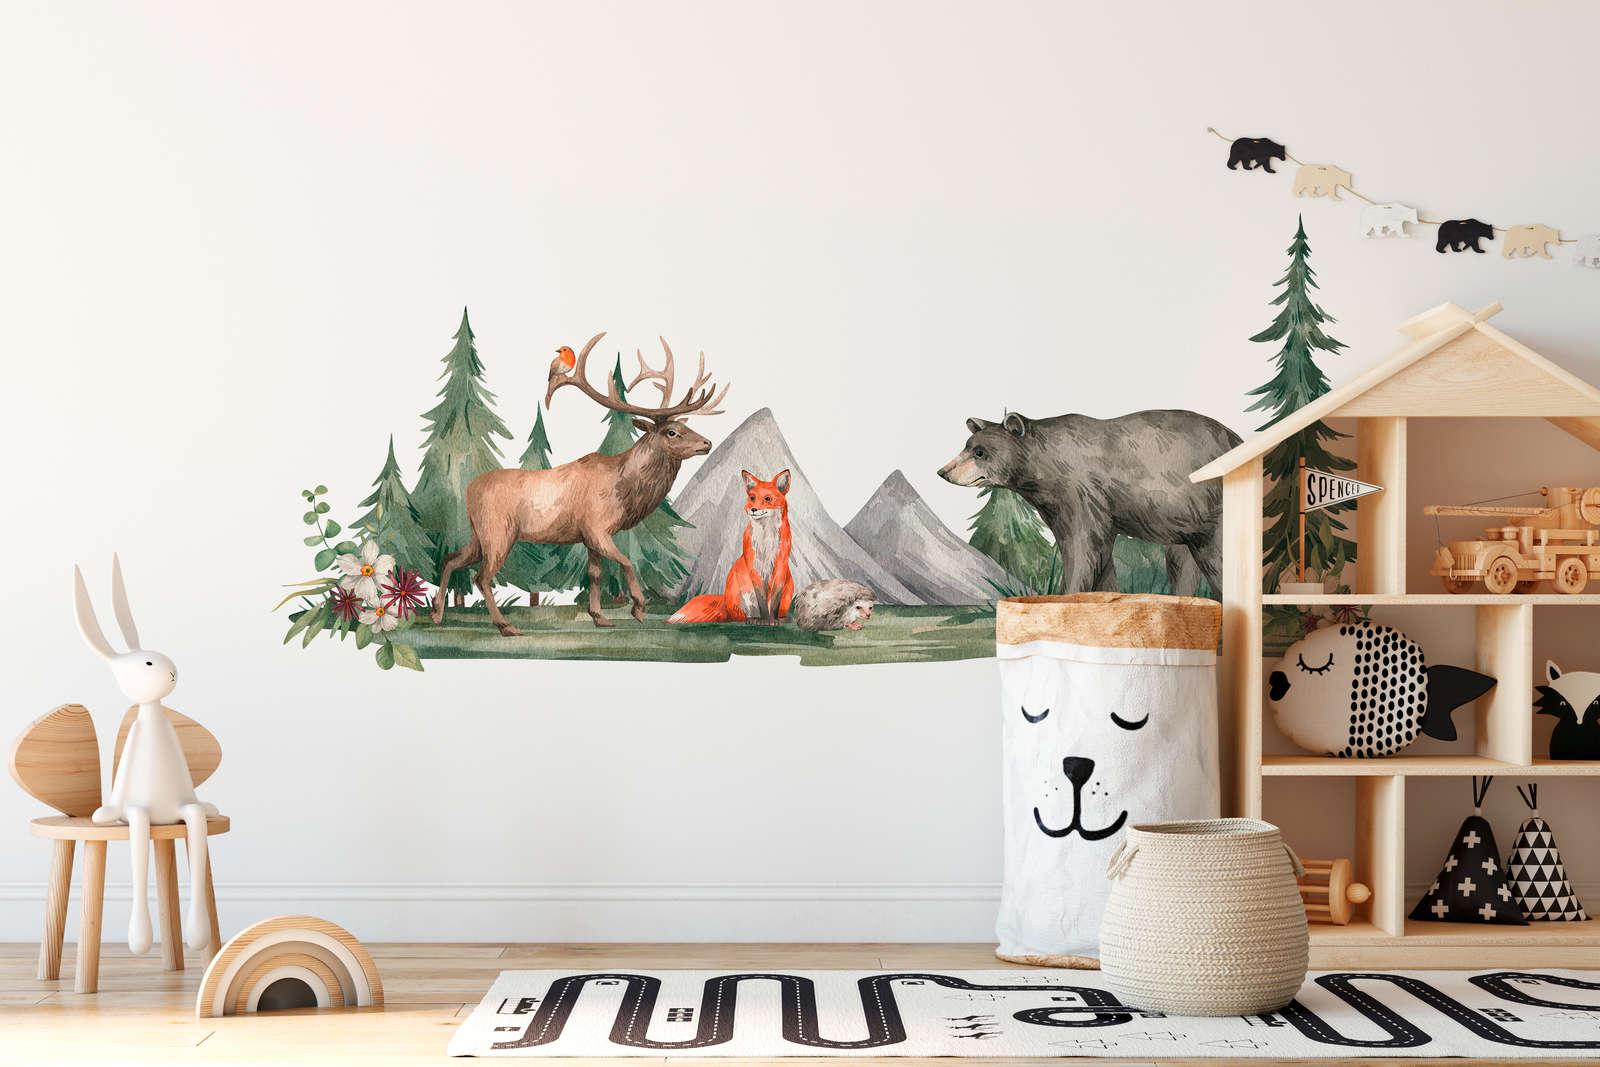             Fototapete Kinderzimmer mit Tieren im Wald – Grün, Braun, Weiß
        